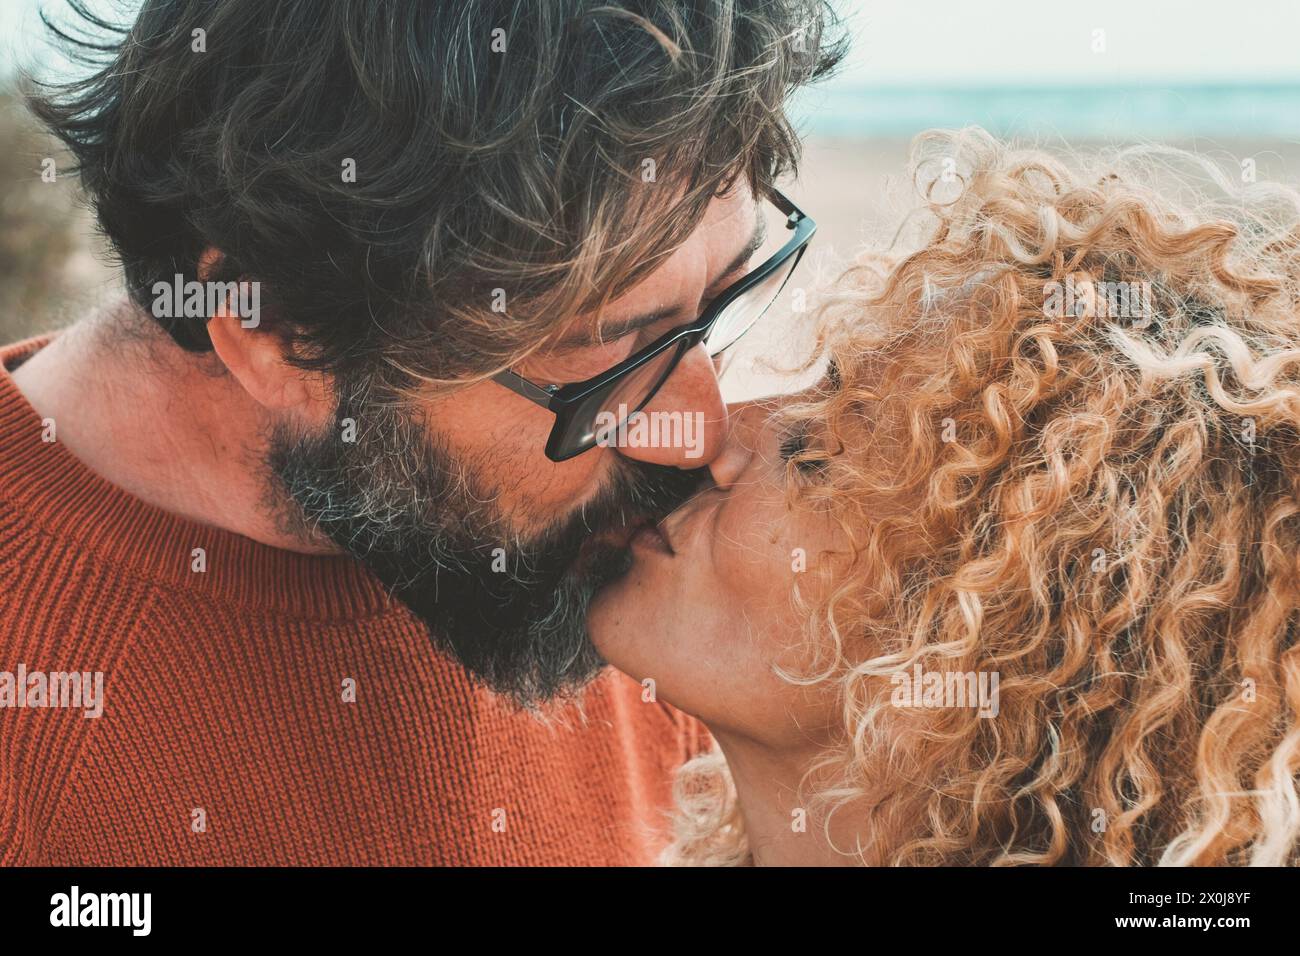 Erwachsene Menschen Mann und Frau in Liebe und Beziehung küssen am Strand mit Meer im Hintergrund. Ein Paar in einer glücklichen Beziehung hat romantische Freizeit zusammen mit Zärtlichkeit und Kuss Stockfoto